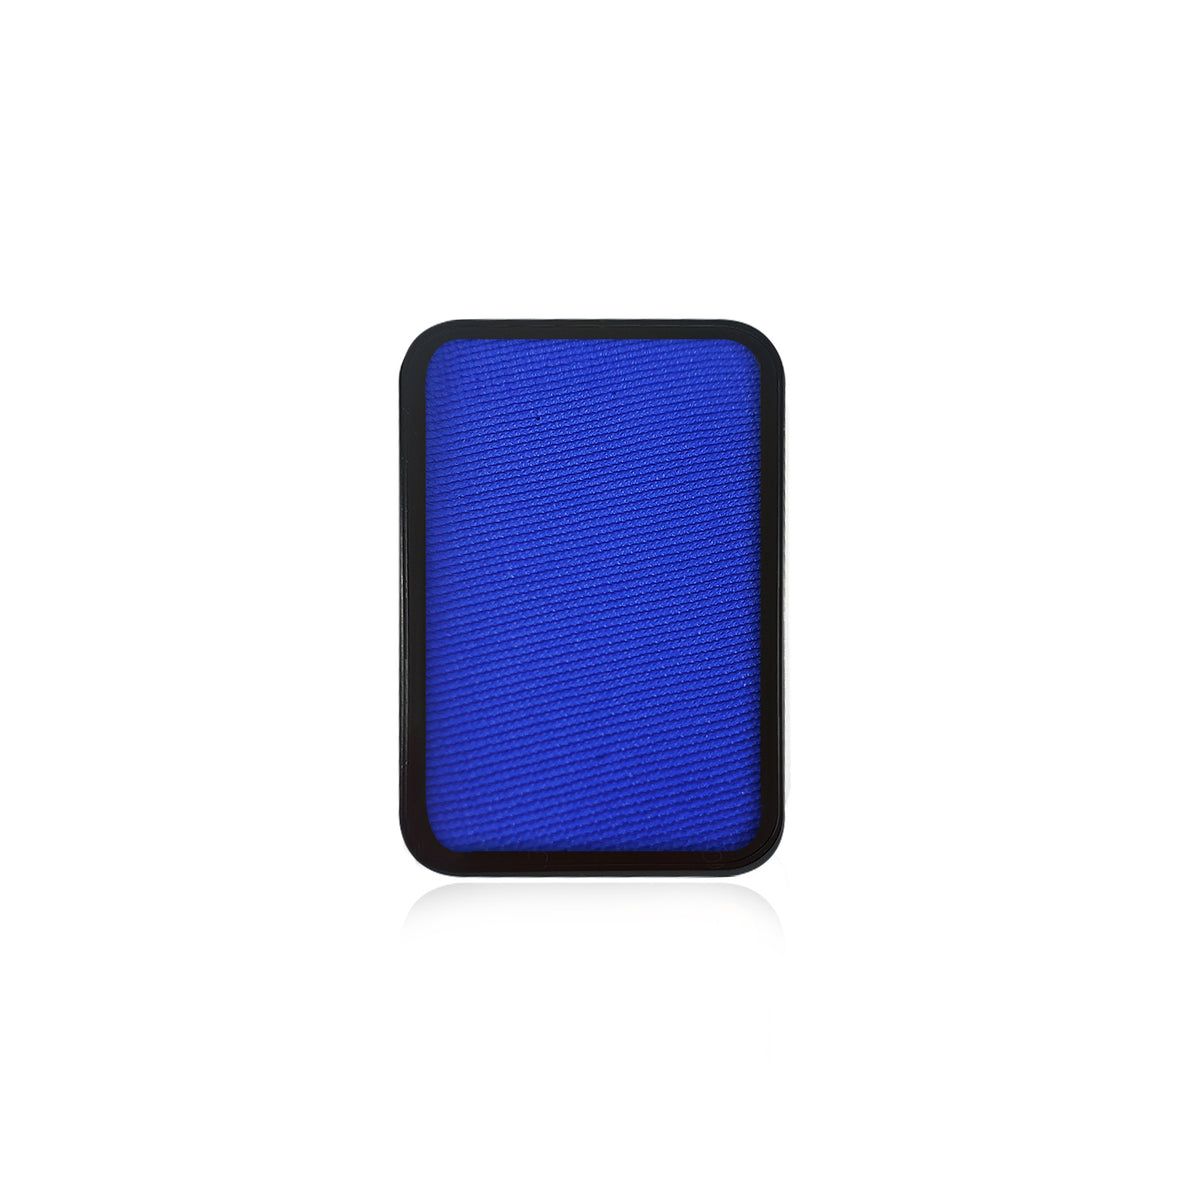 Kraze Face Paint Palette Refill - Royal Blue (0.35 oz/10 gm)